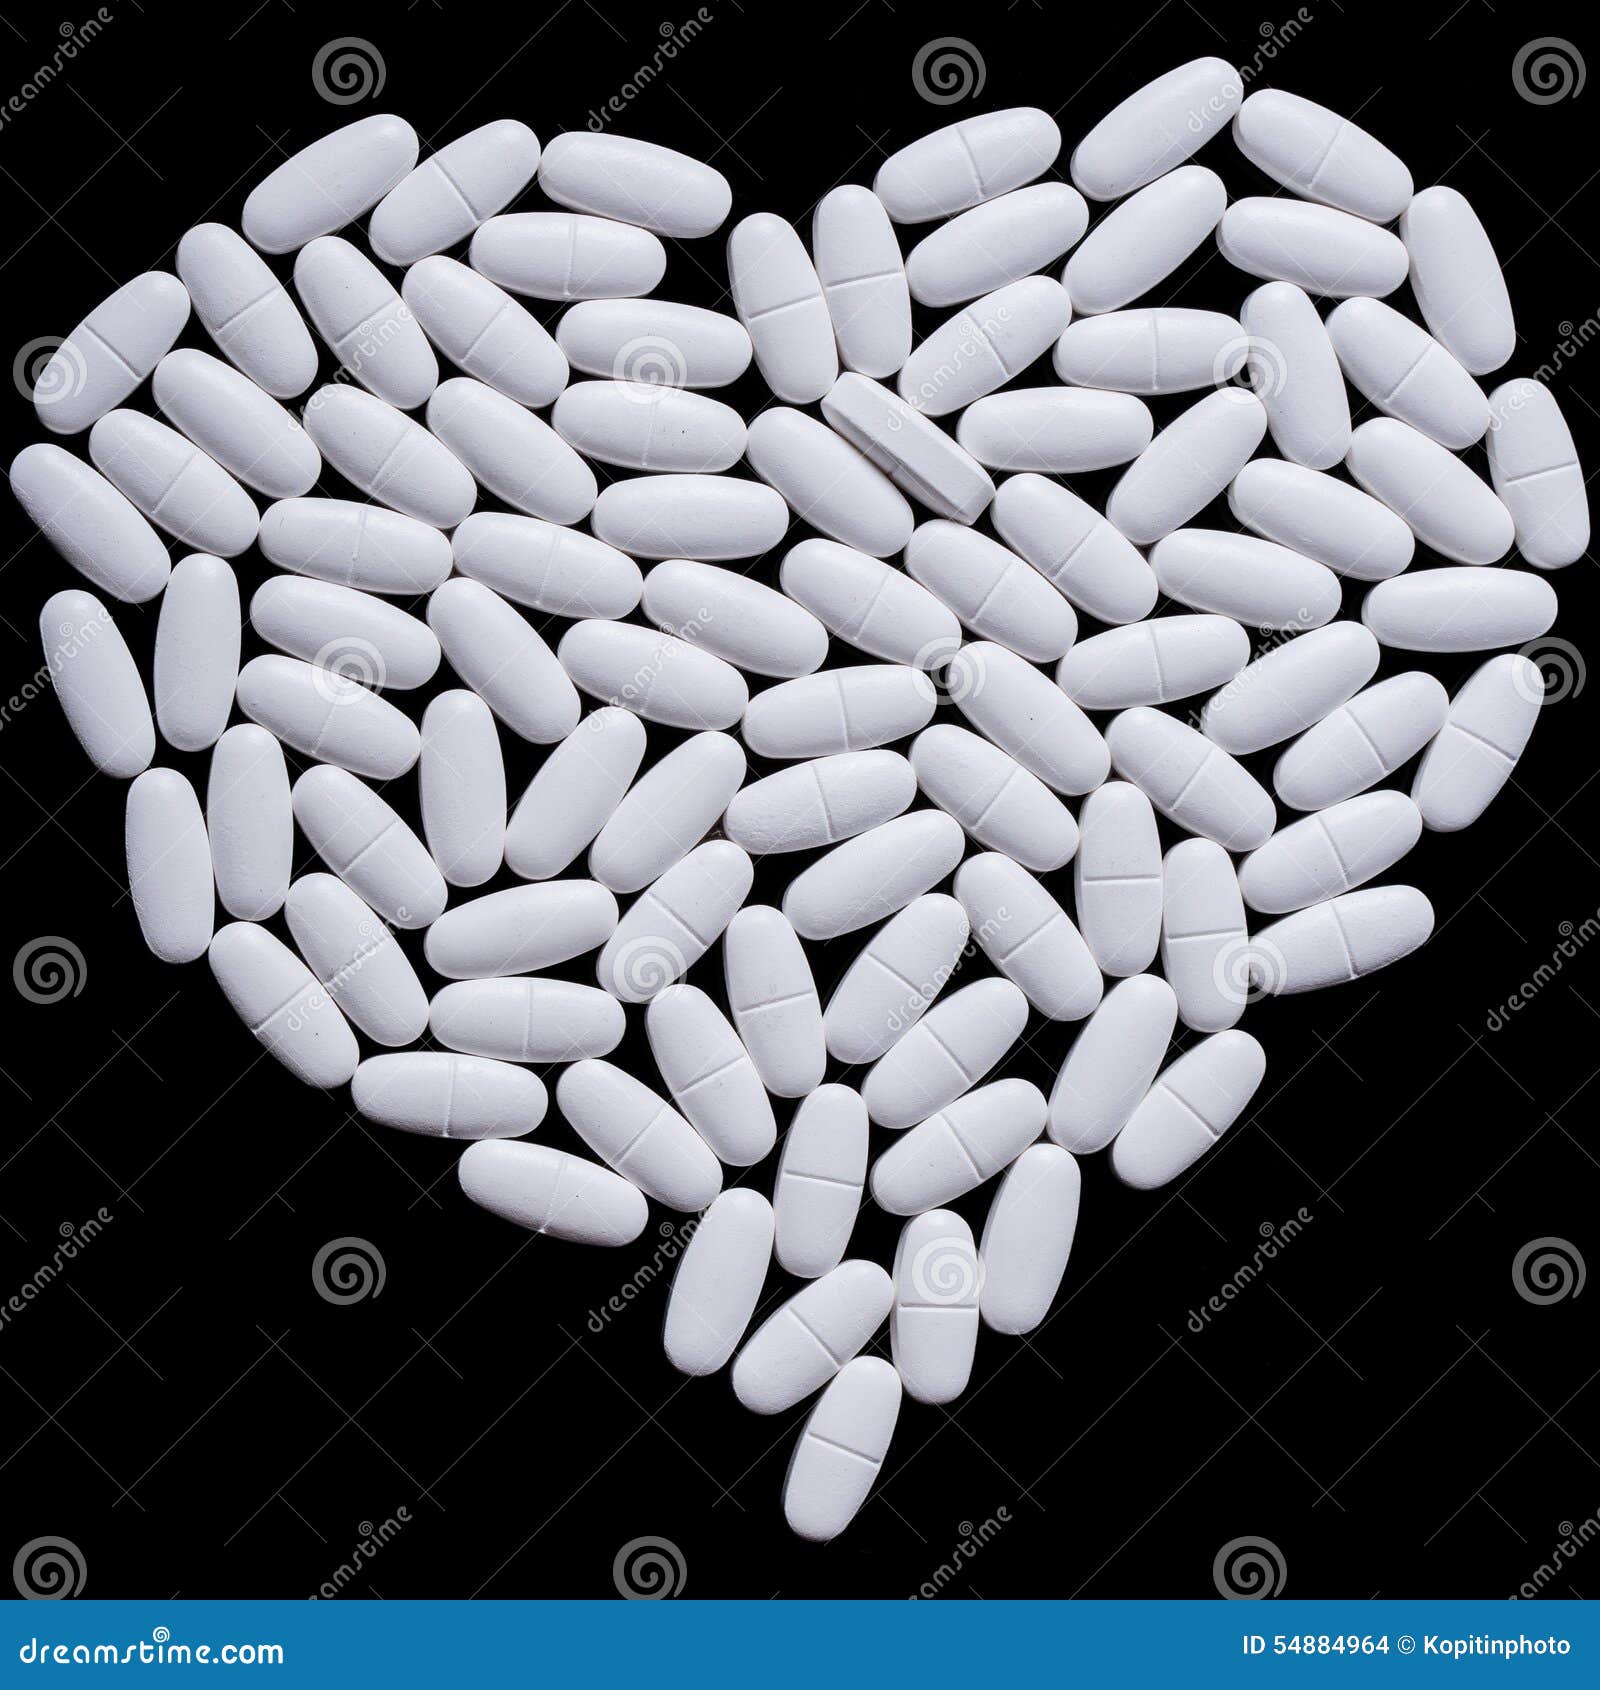 Сердце белых продолговатых таблеток. иллюстрации. 